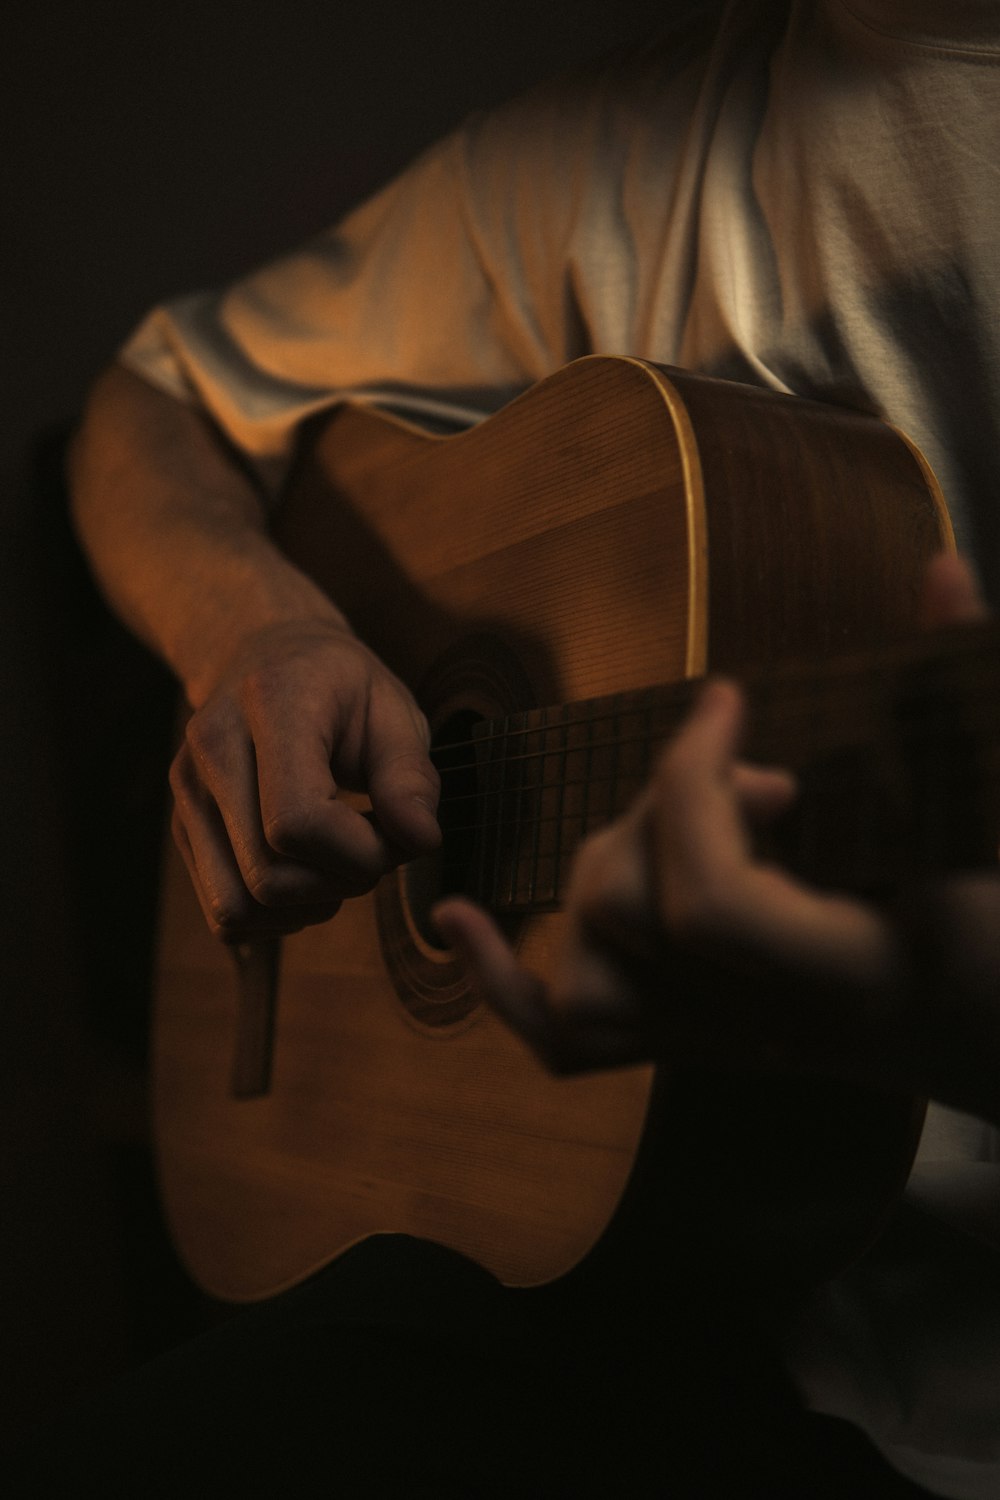 Un hombre tocando una guitarra en una habitación oscura